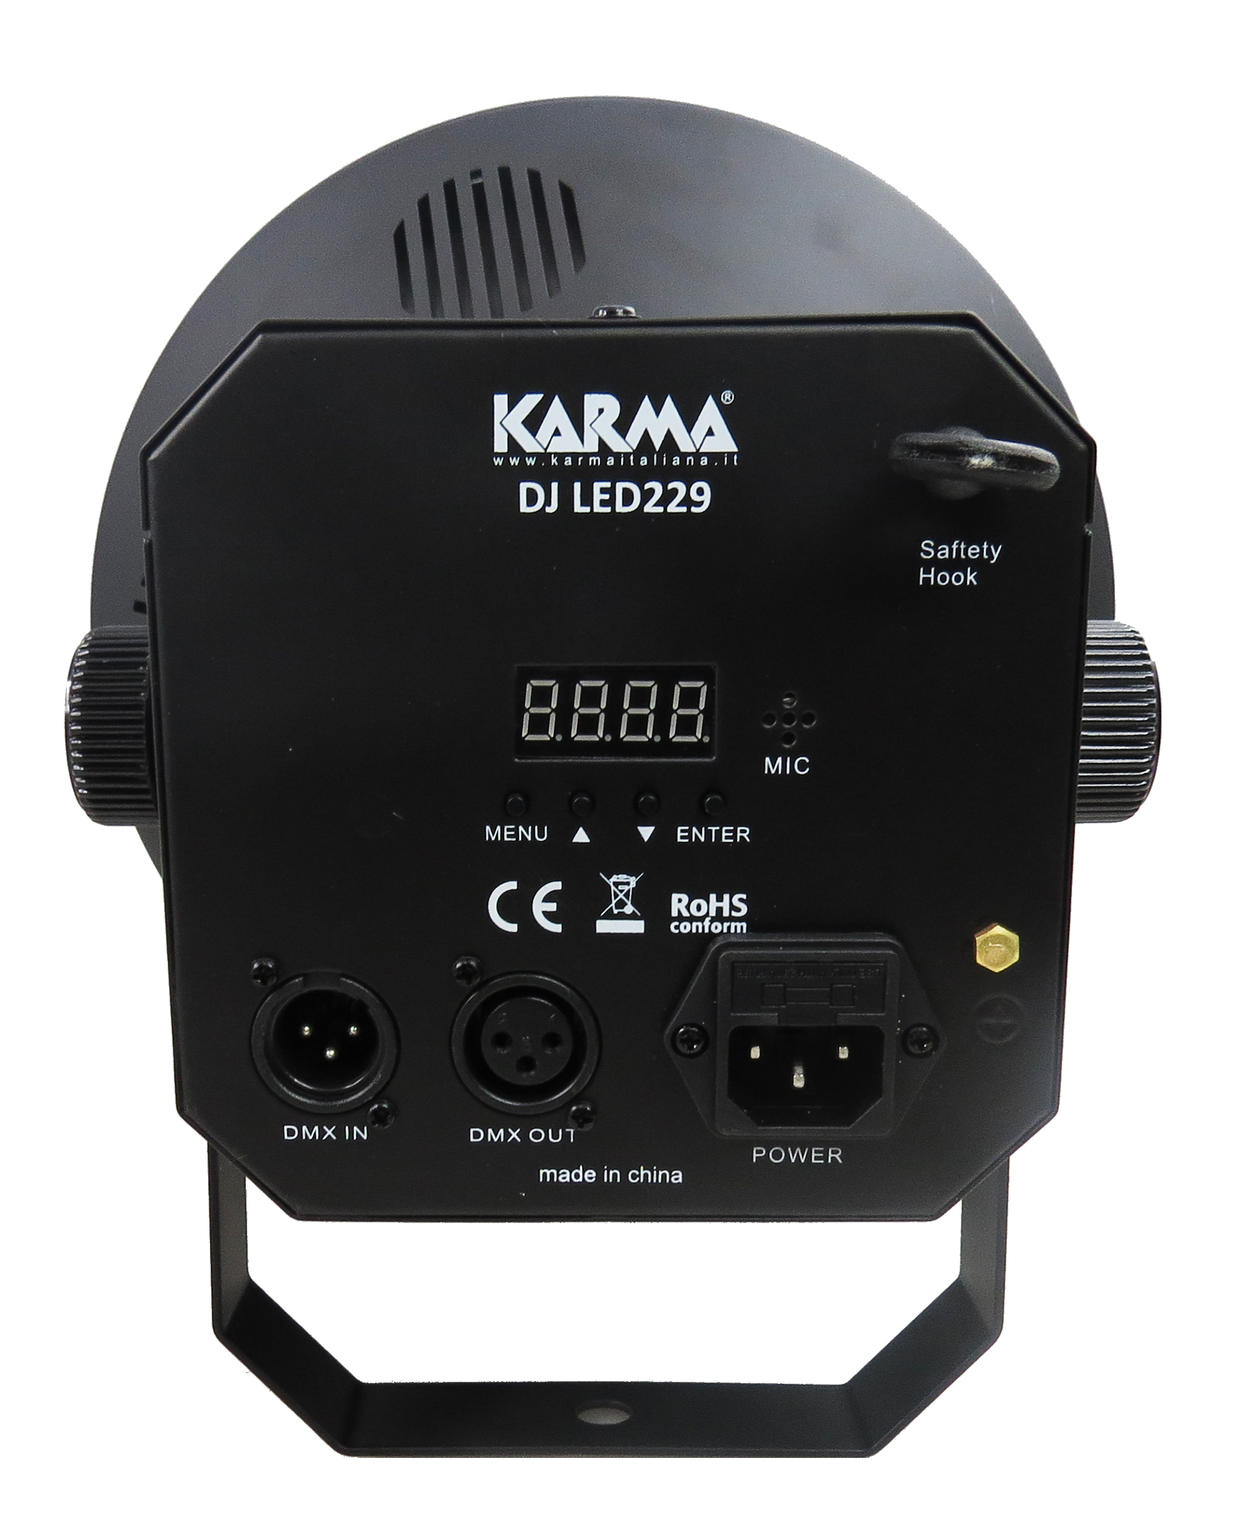 Karma DJ LED229